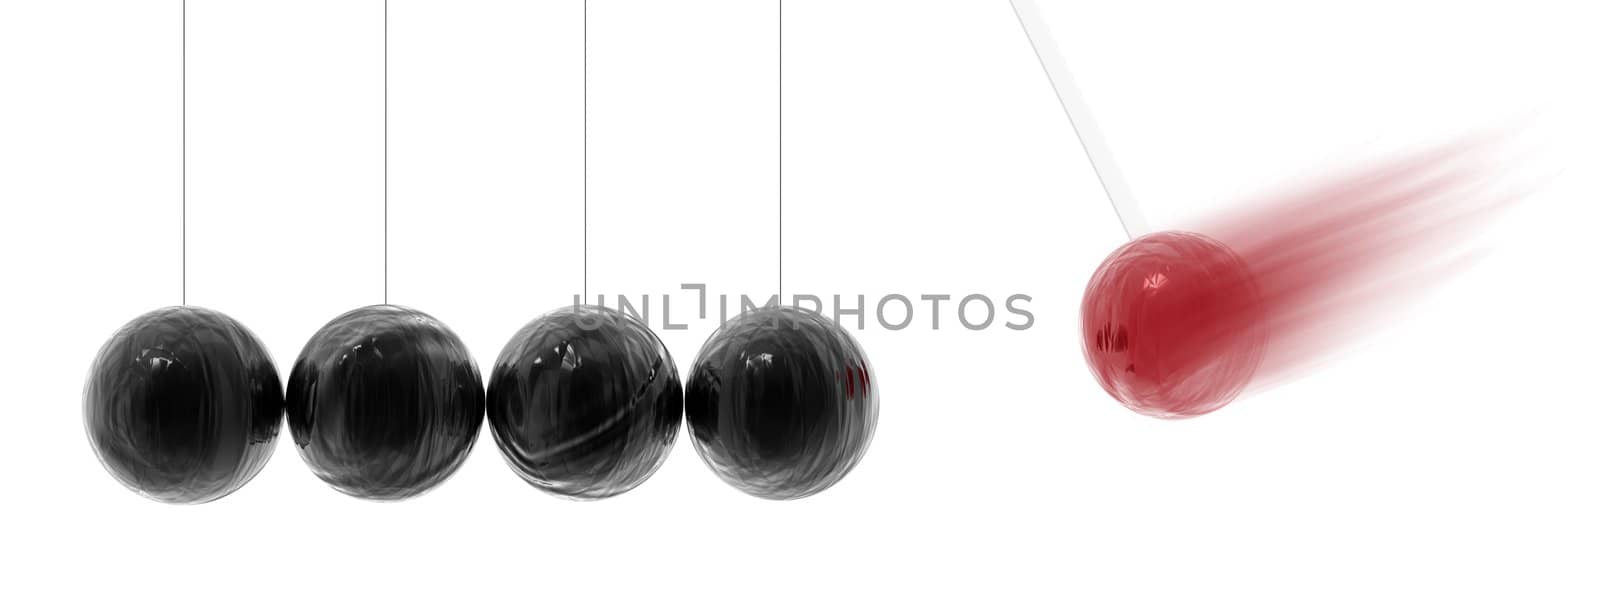 Balancing balls by anki21